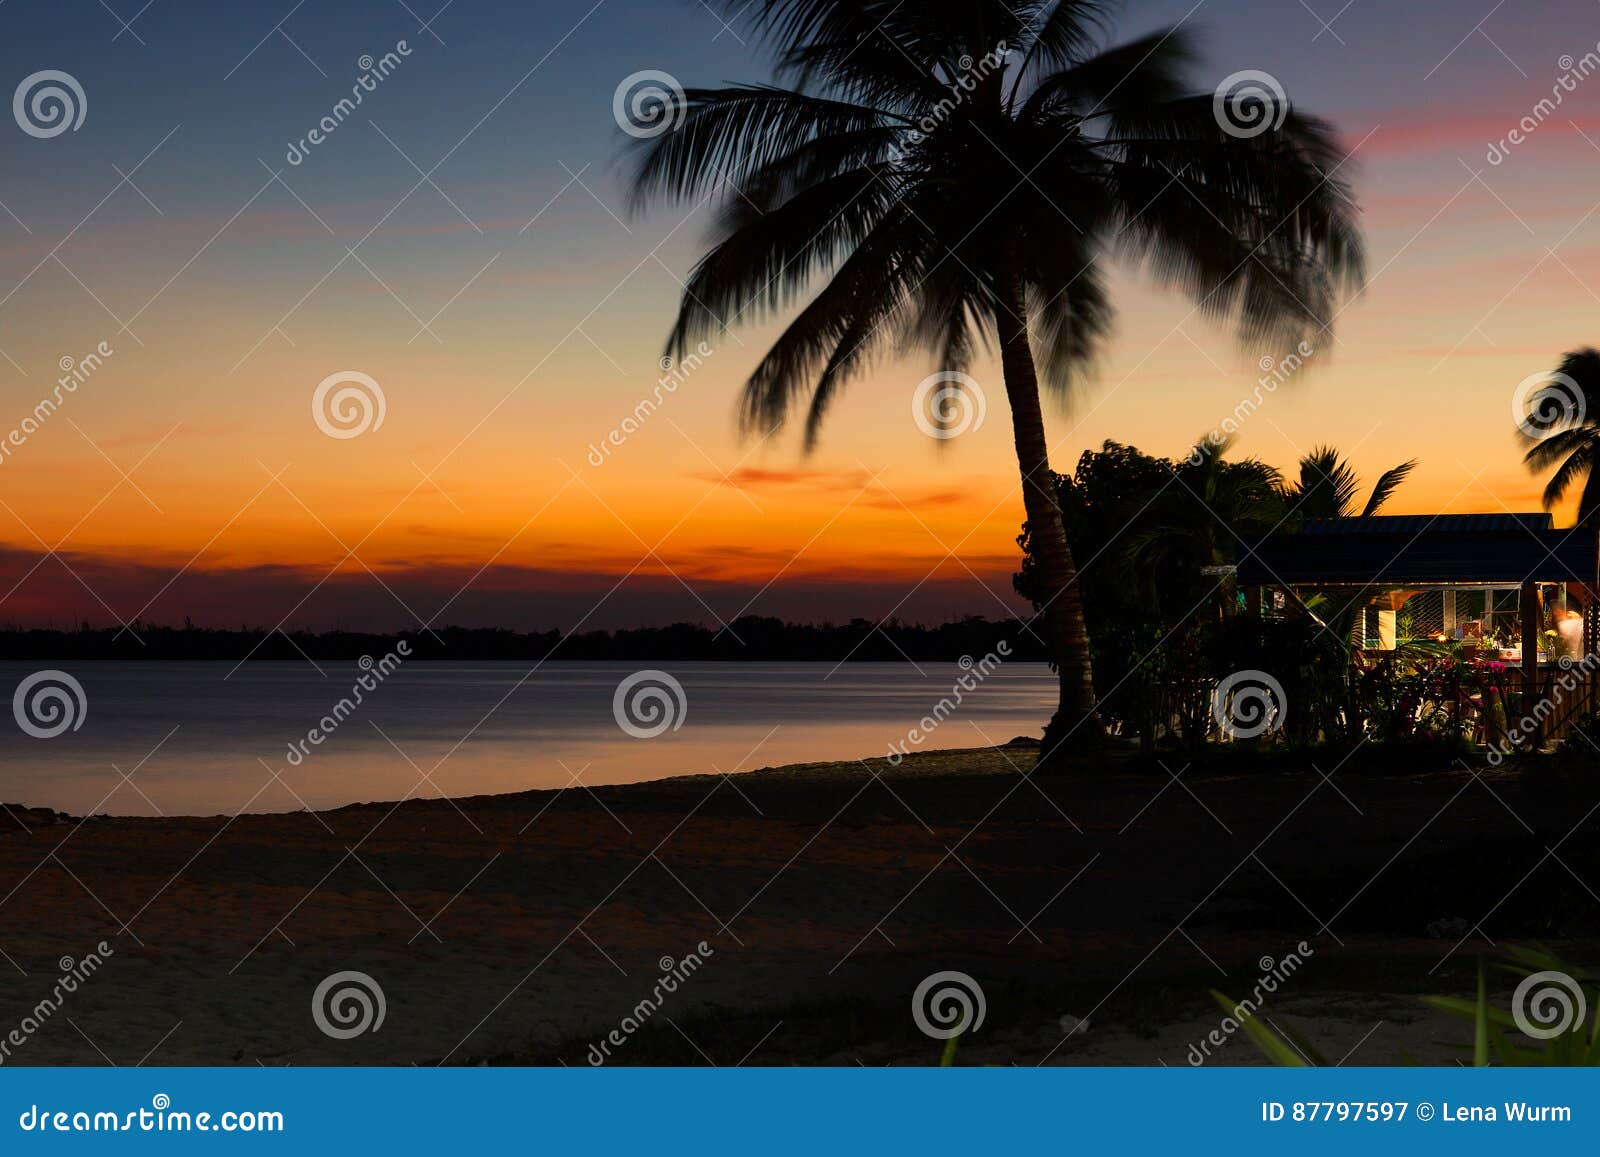 beautiful sunset in playa larga beach, bay of pigs, matanzas, cub